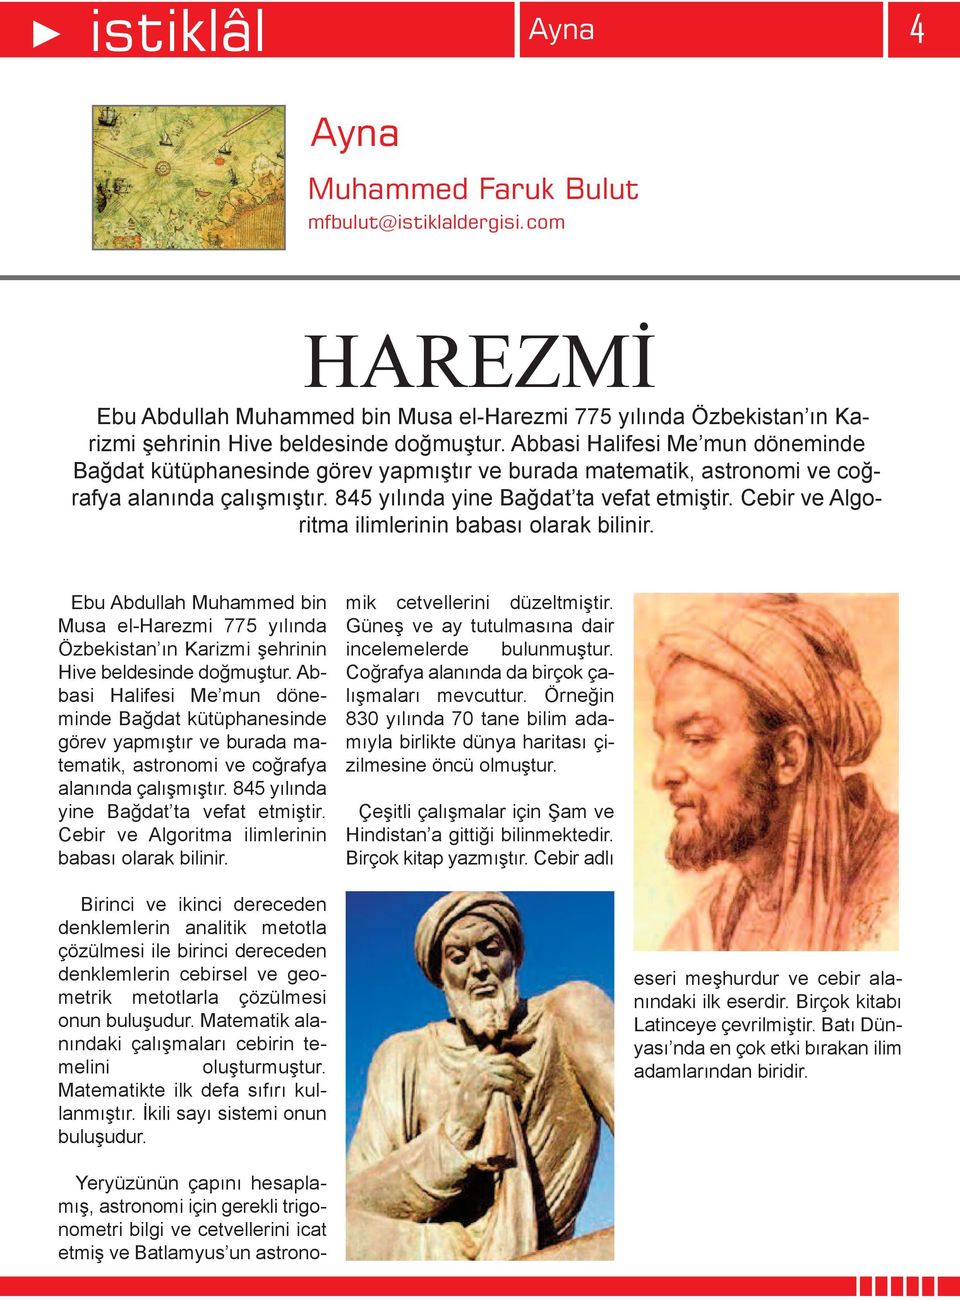 Cebir ve Algoritma ilimlerinin babası olarak bilinir. Ebu Abdullah Muhammed bin Musa el-harezmi 775 yılında Özbekistan ın Karizmi şehrinin Hive beldesinde doğmuştur.